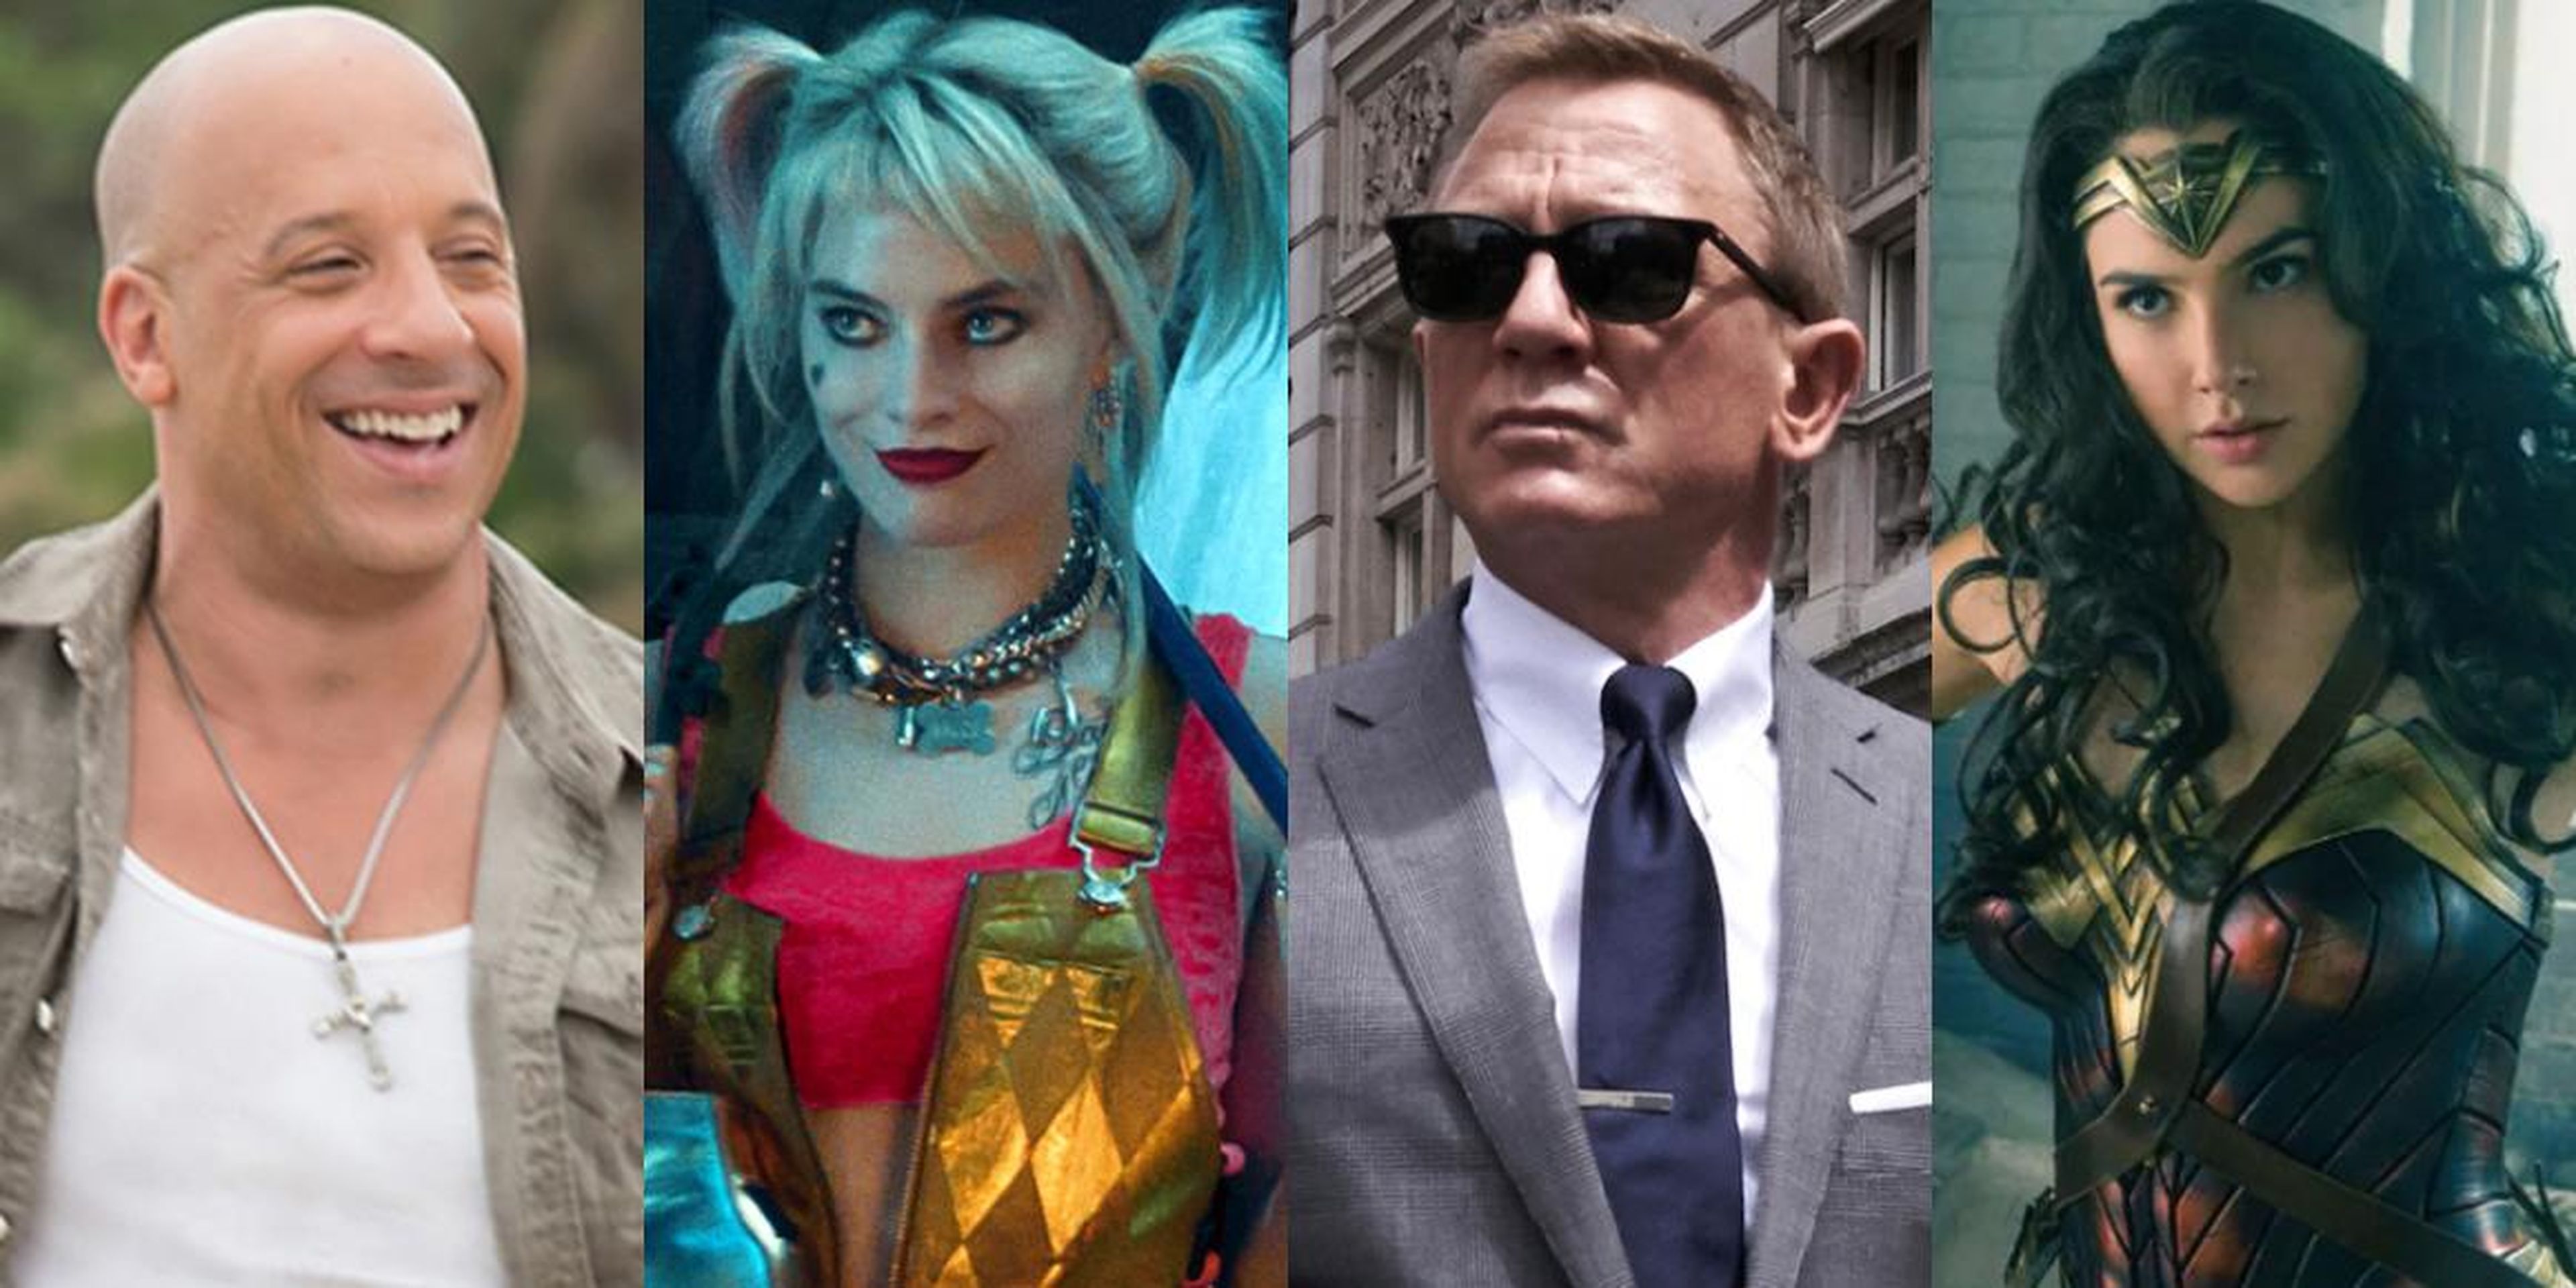 Otra película de "Fast and the Furious" y el agente Bond llegará a los cines en 2020 junto con más personajes femeninos de DC.